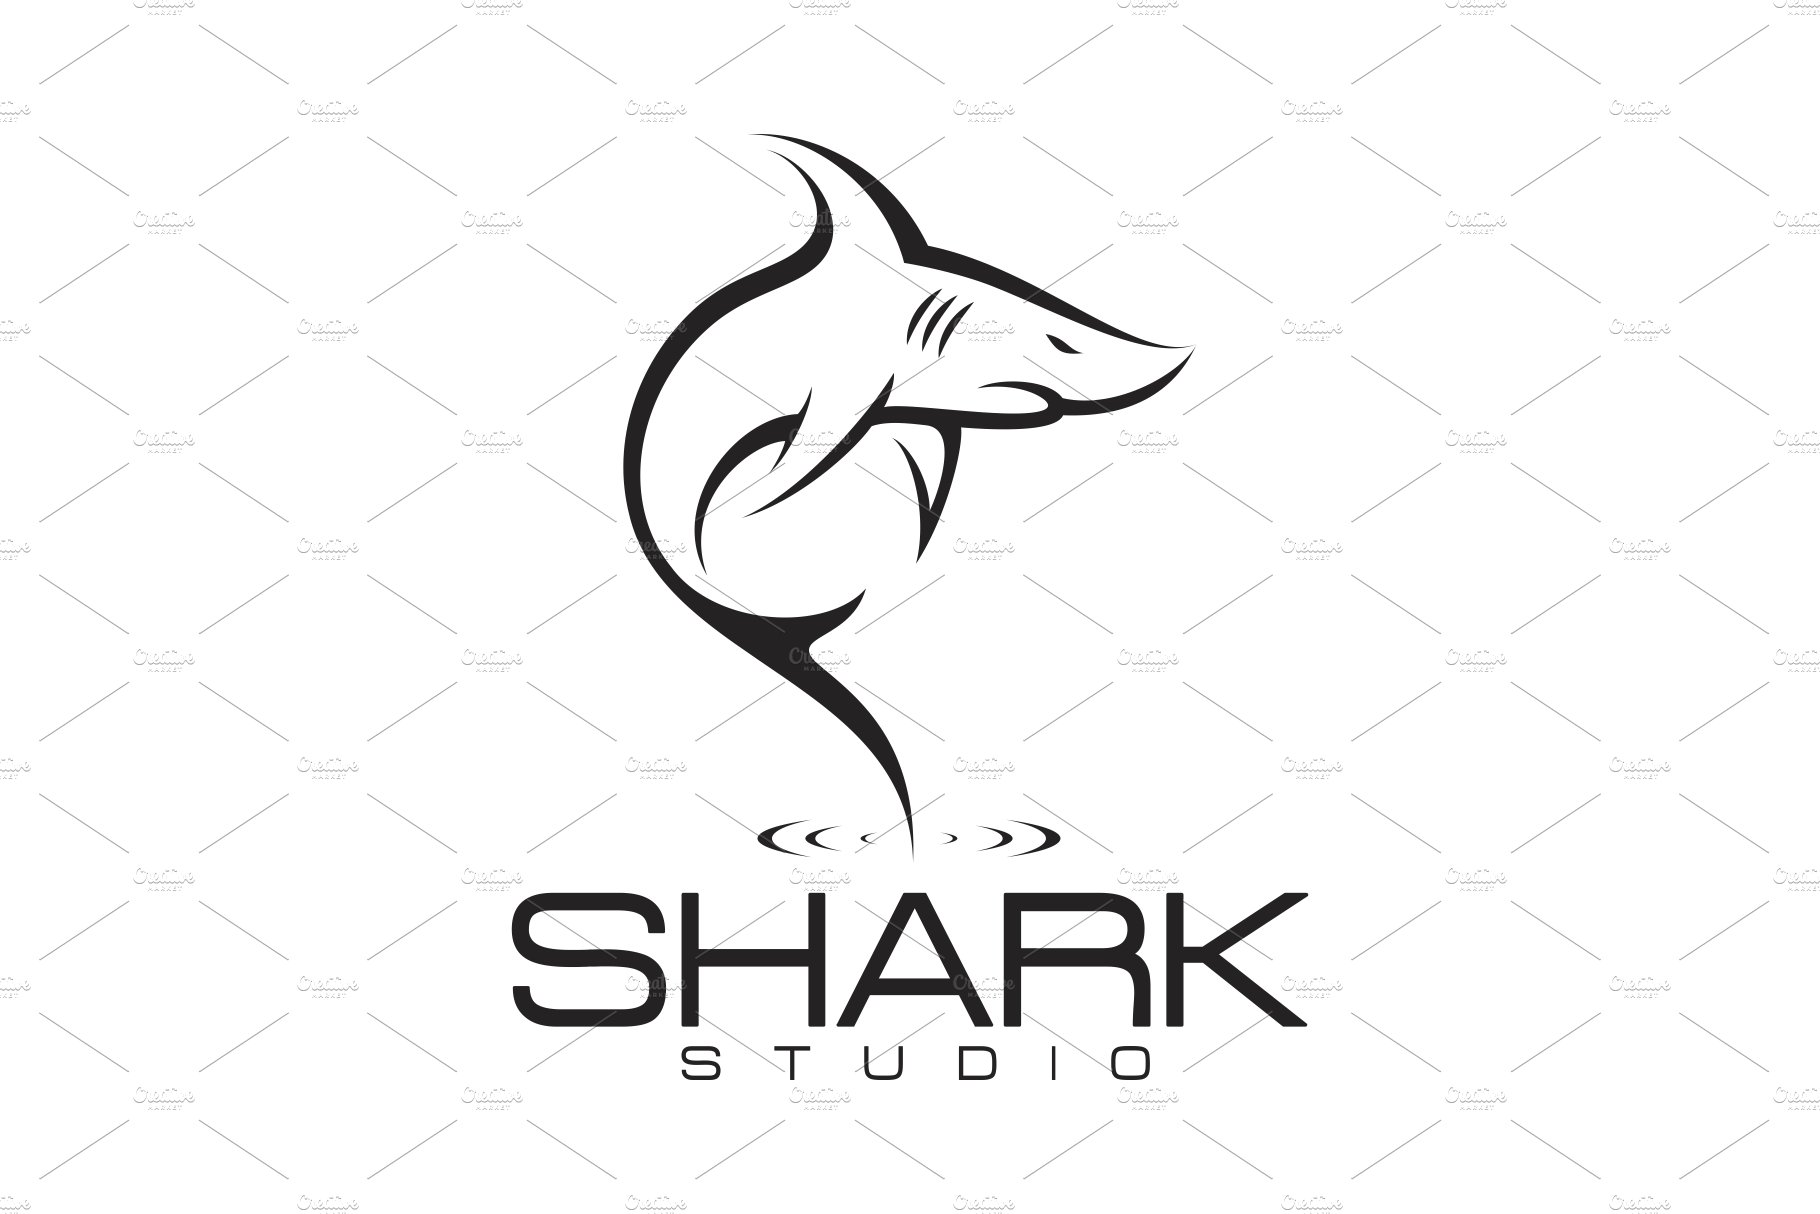 Shark Logo cover image.